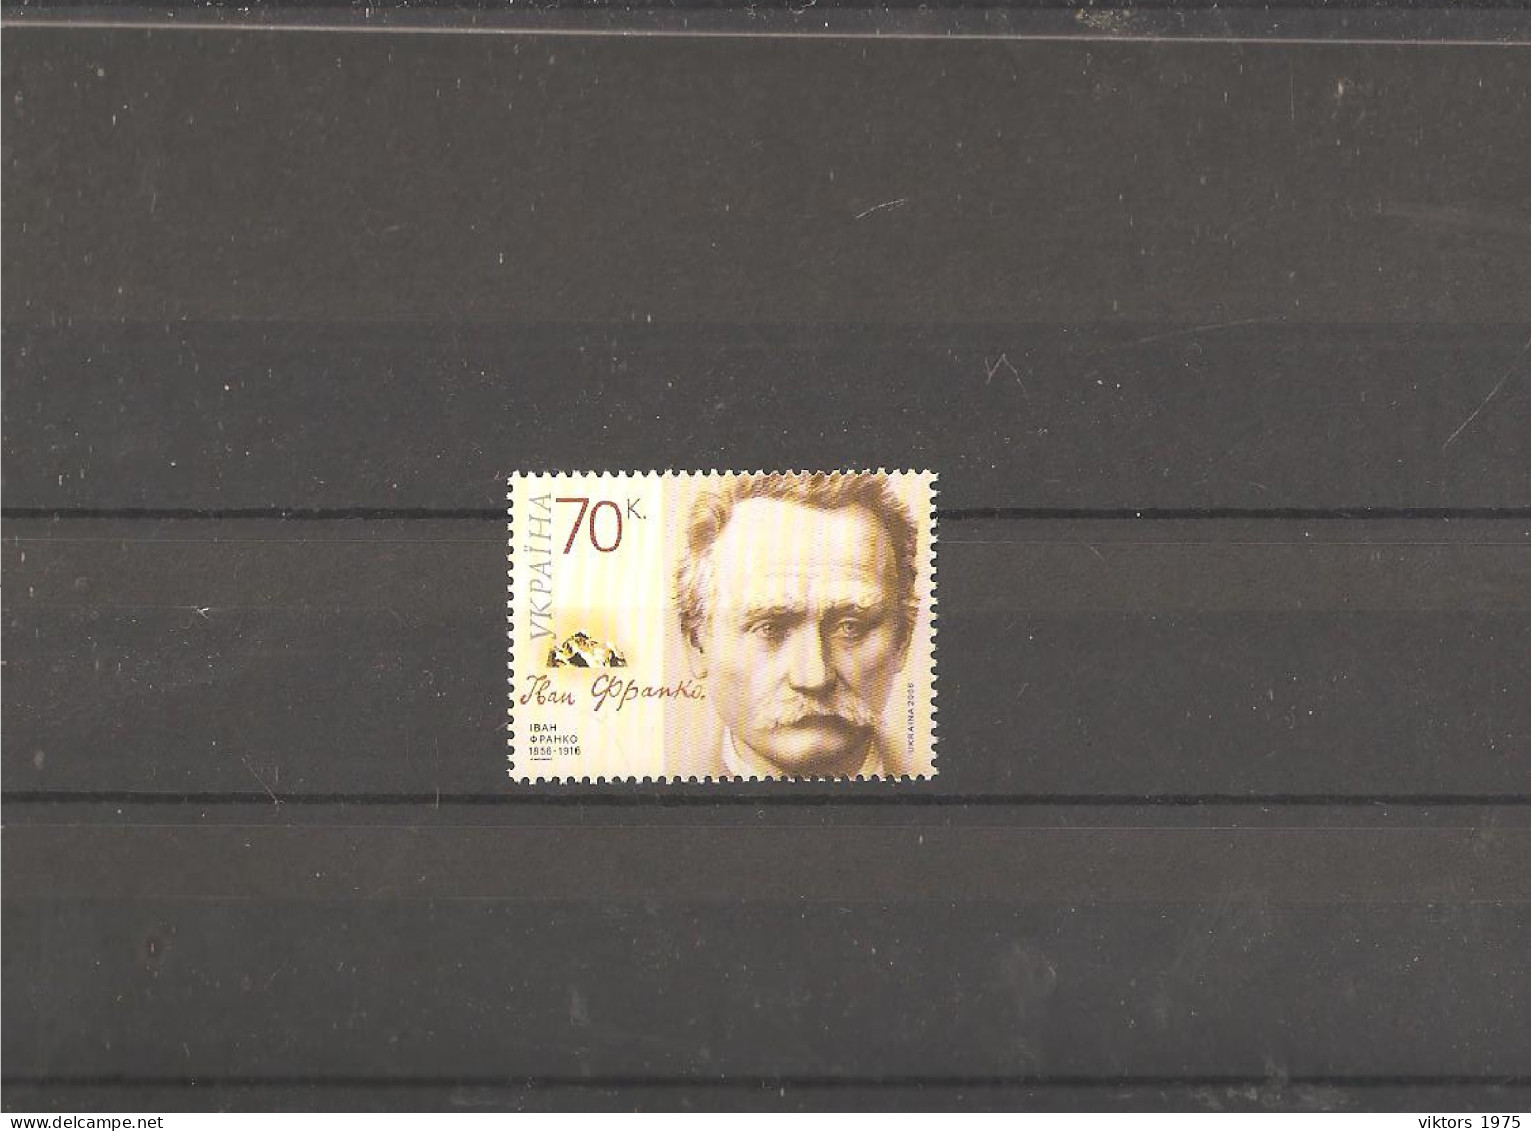 MNH Stamp Nr.807 In MICHEL Catalog - Ukraine